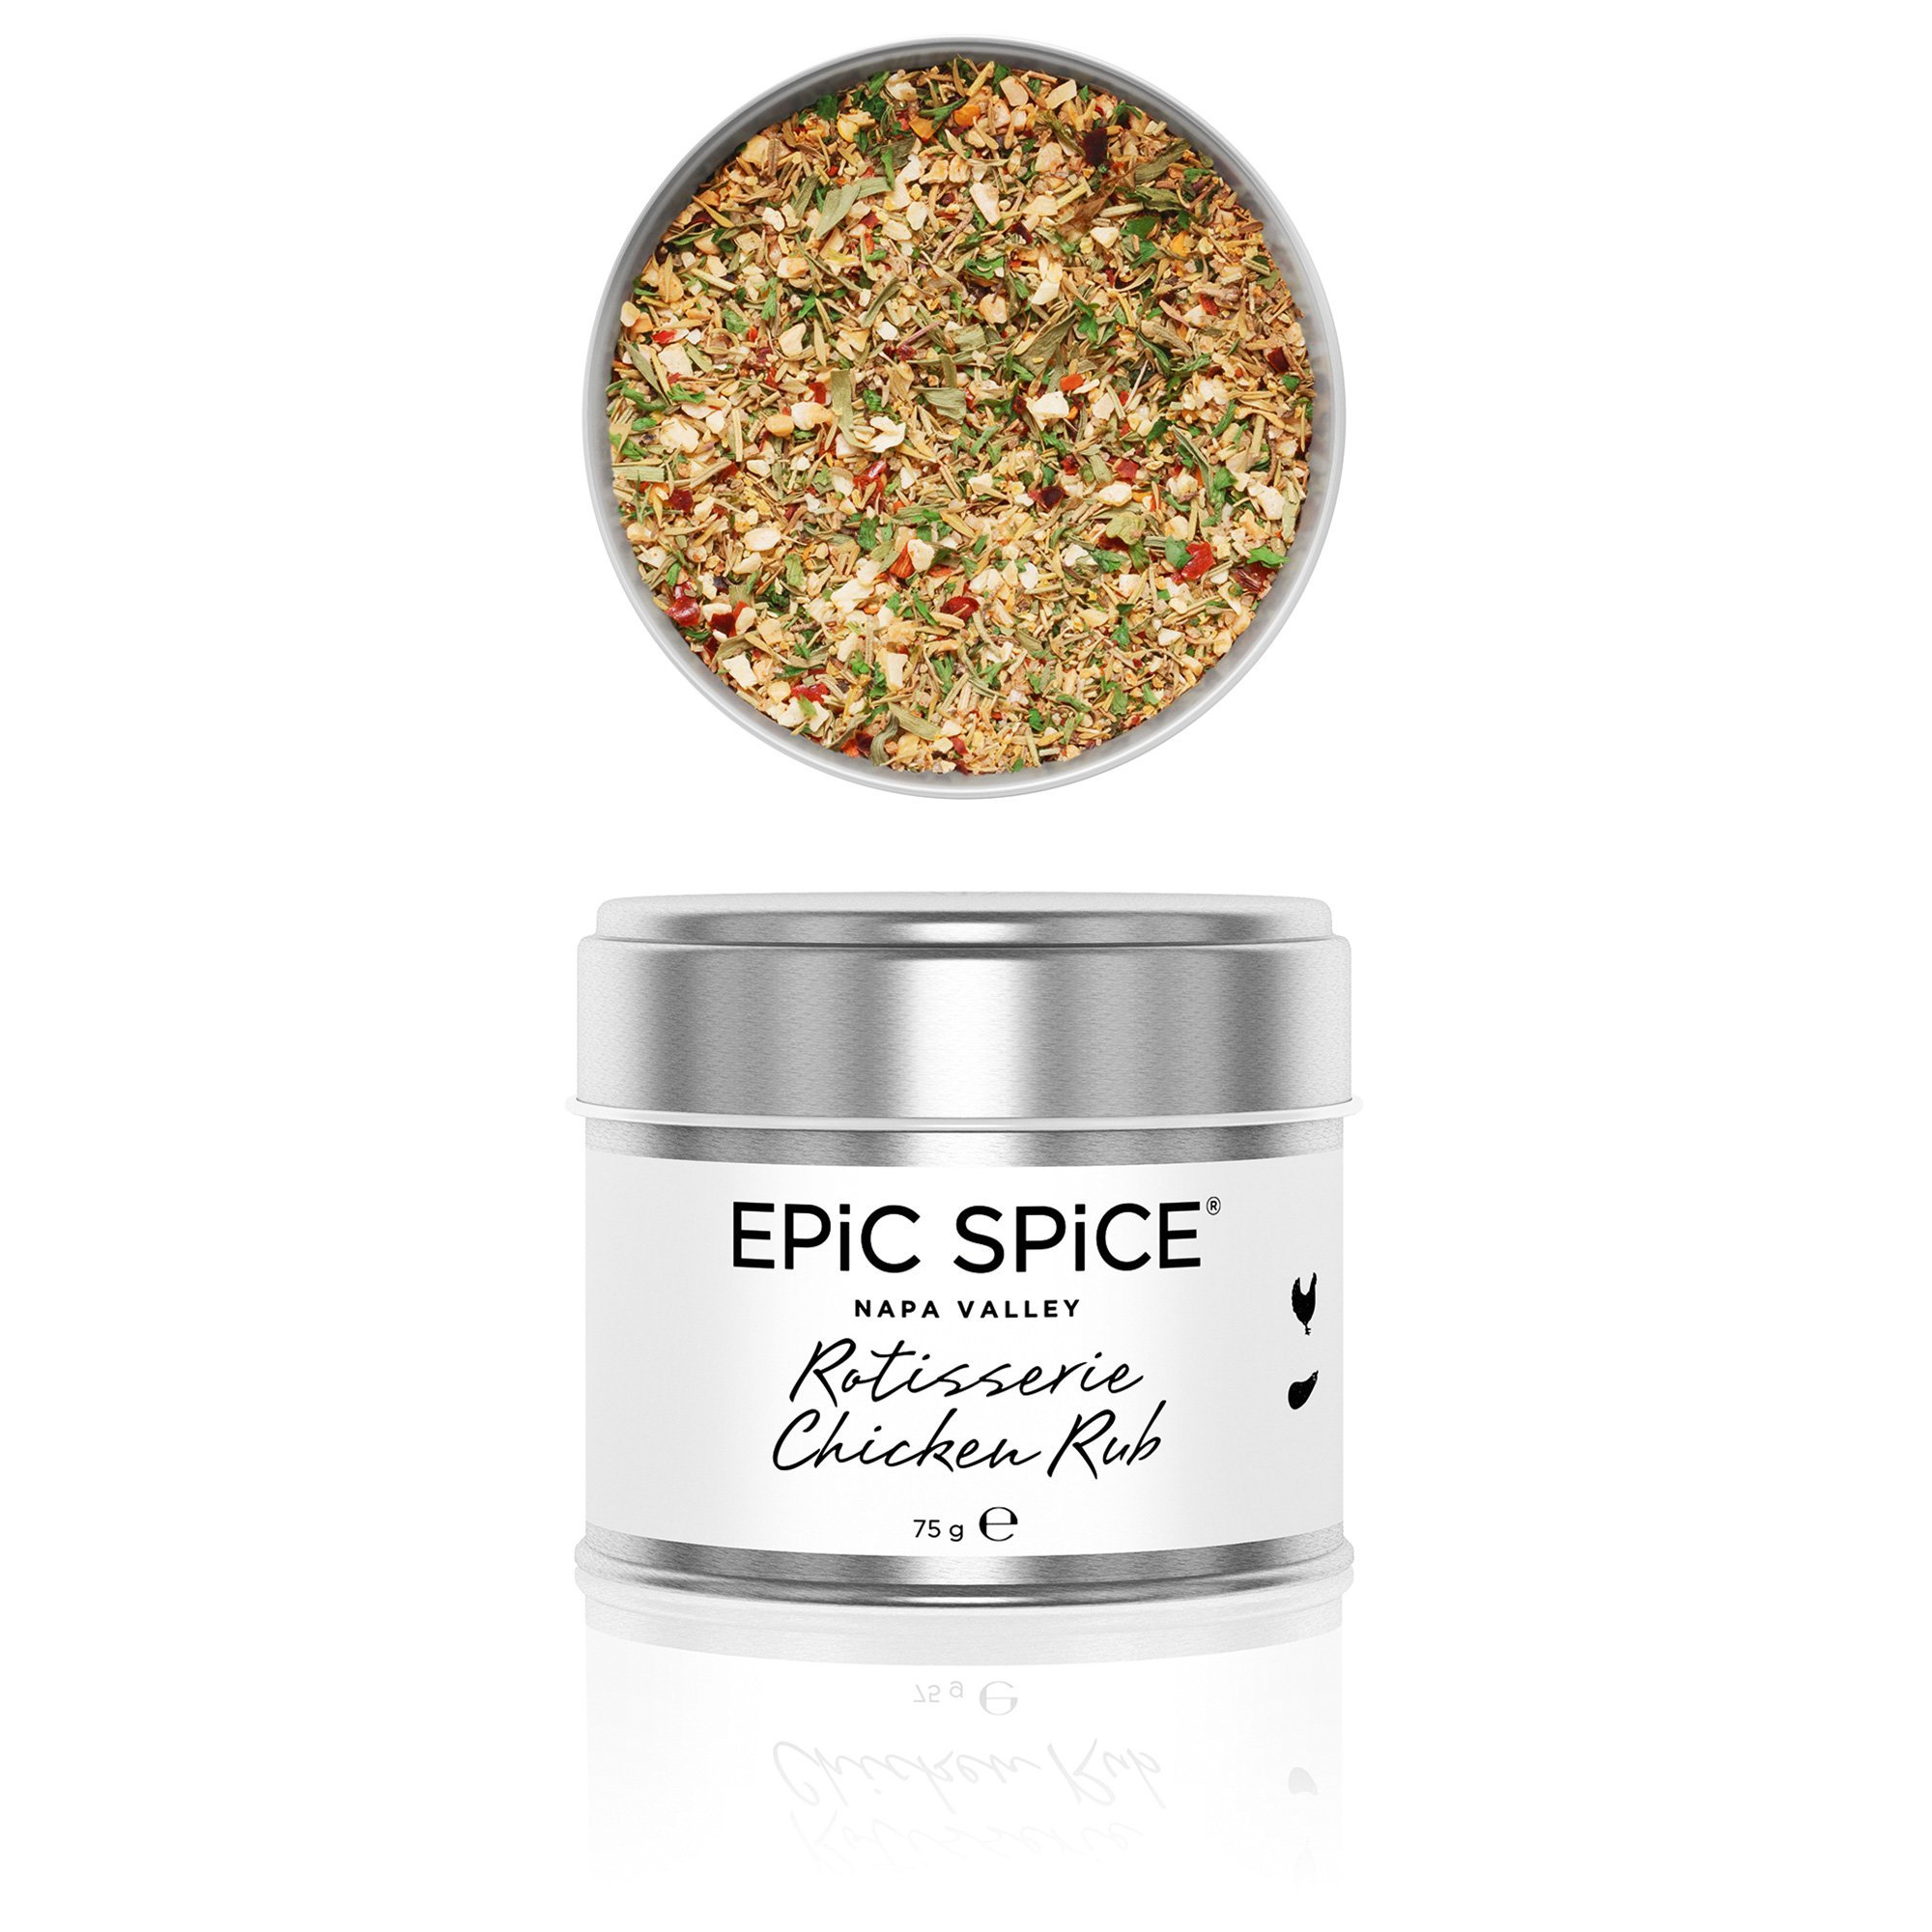 Epic Spice Rotisserie chicken rub 75 g